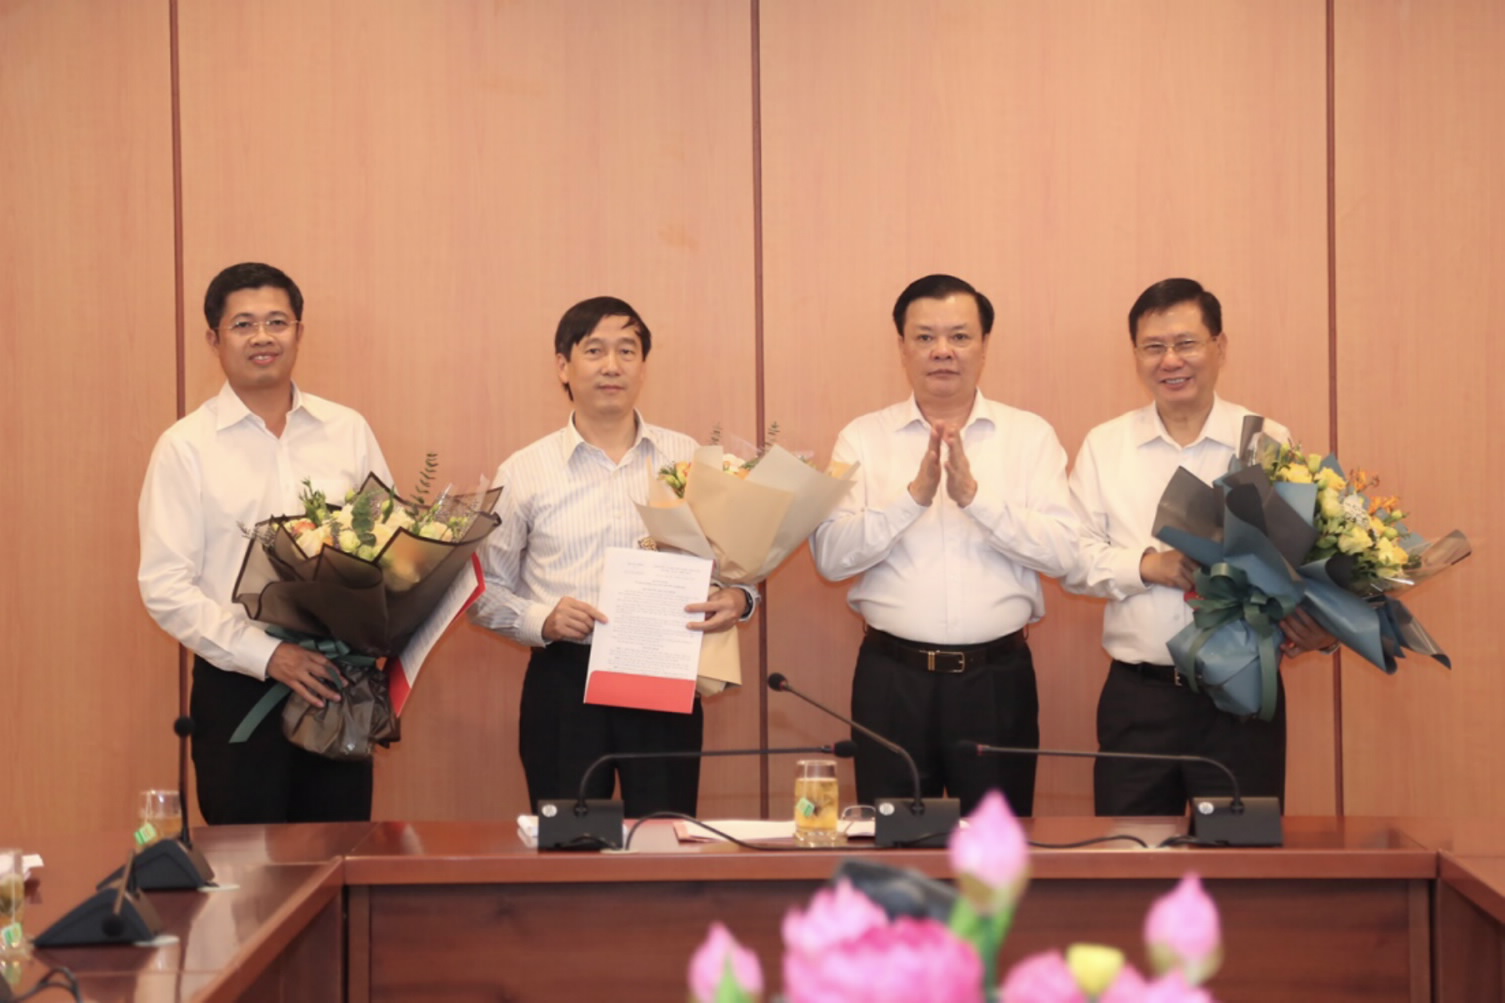 Bộ trưởng Đinh Tiến Dũng trao quyết định cho đồng chí Đặng Đức Mai, đồng chí Nguyễn Đại Trí và đồng chí Phạm Đức Thắng. (Ảnh: Mof)